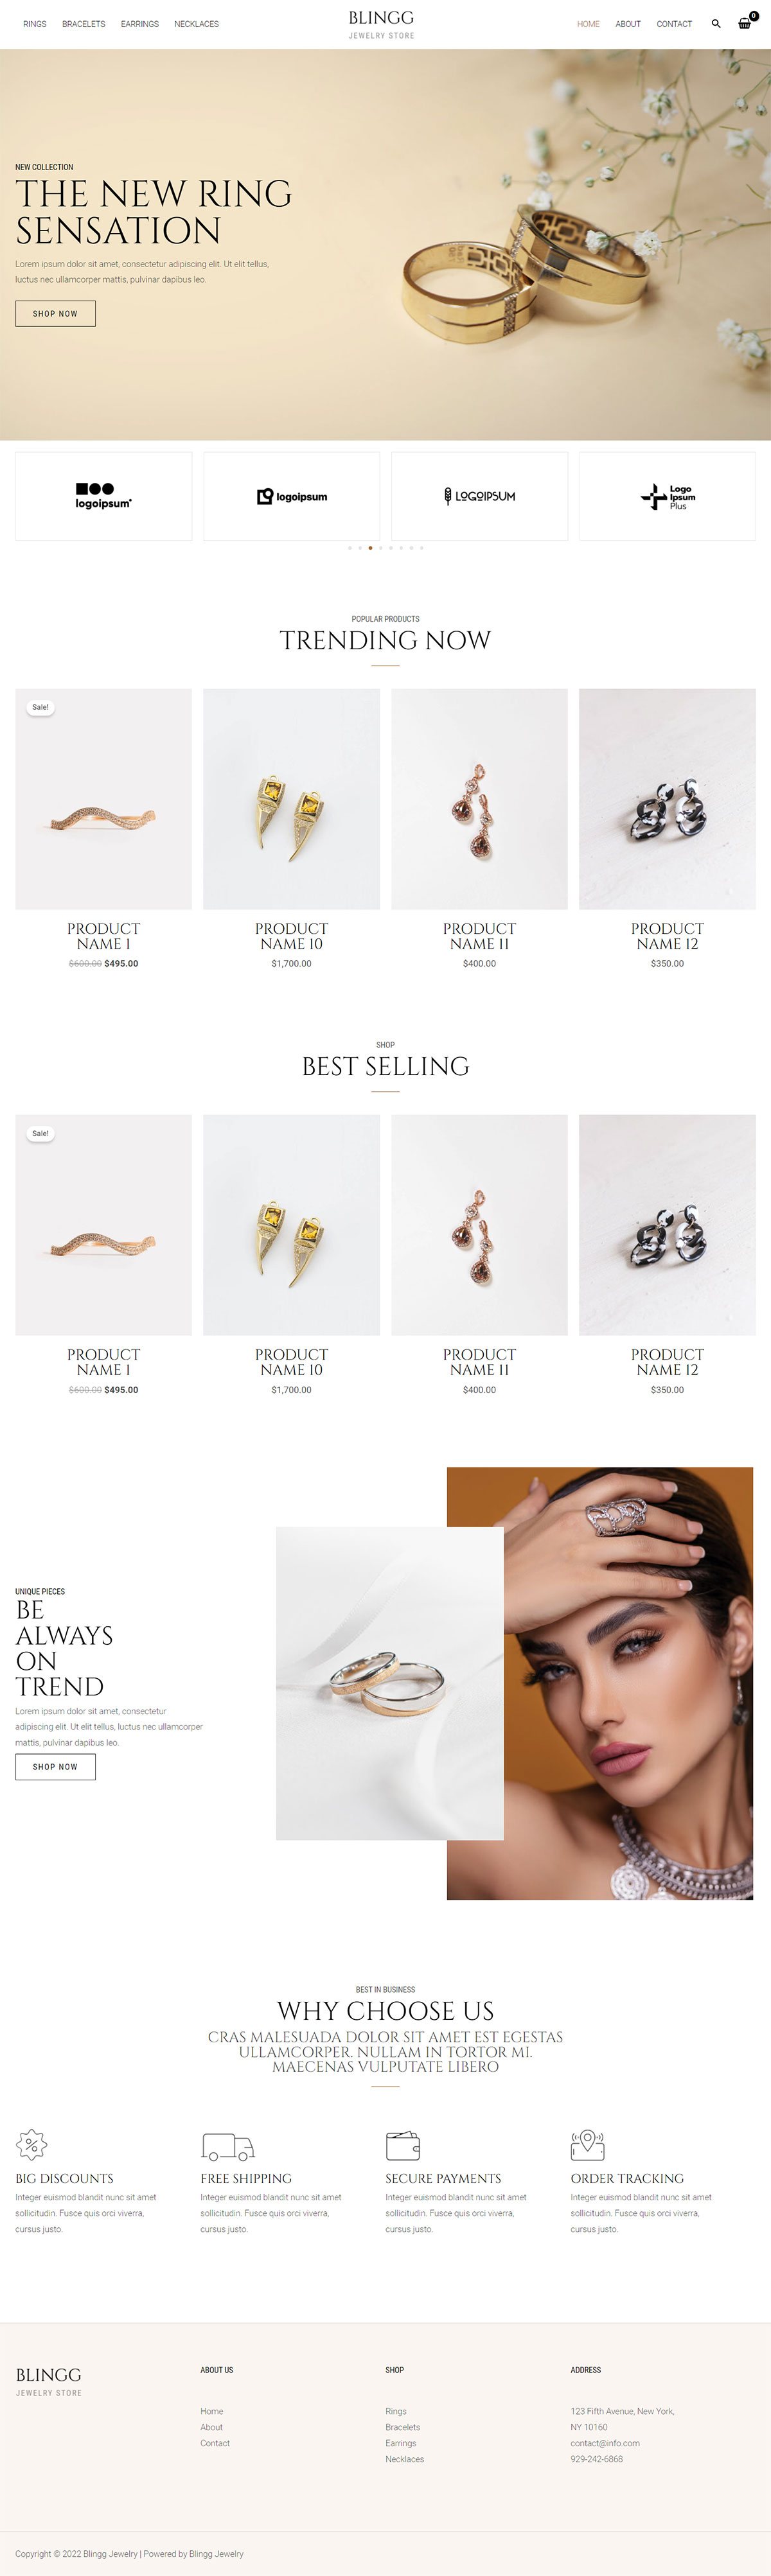 網站設計版型-blingg-jewellery